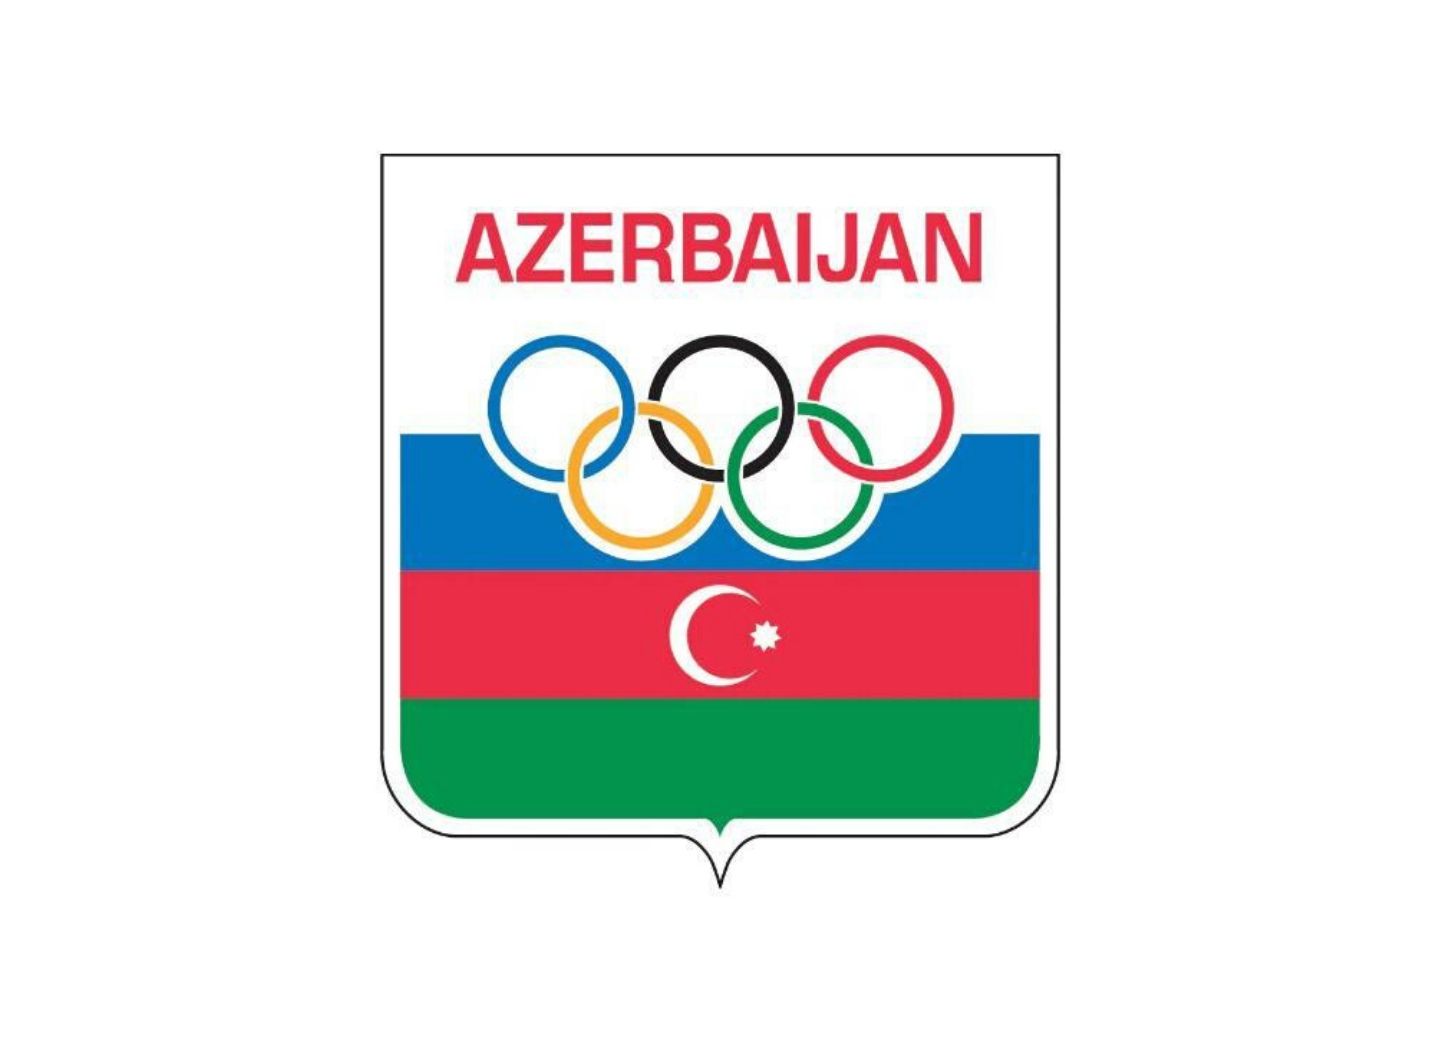 НОК Азербайджана: «Отчет Макларена носит предвзятый характер»